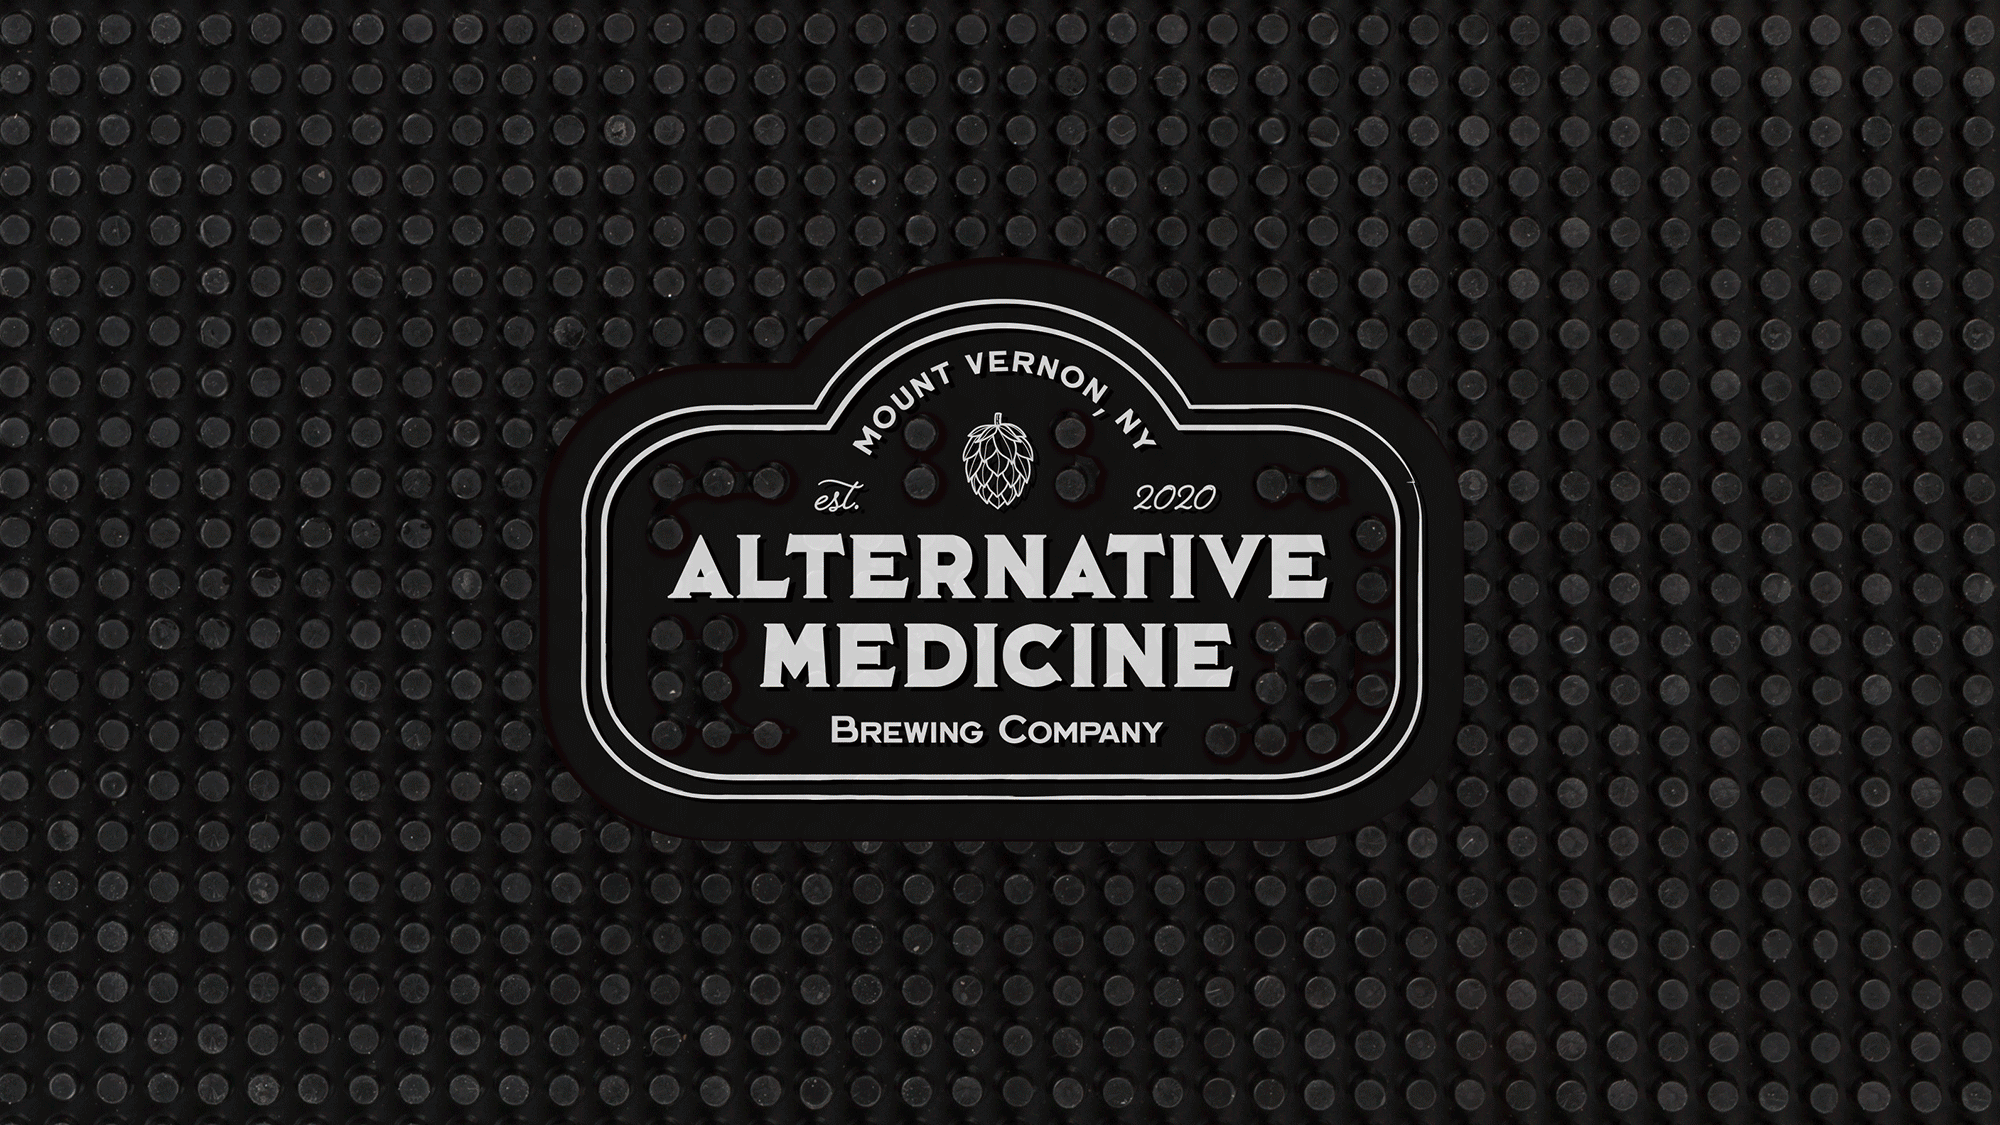 Alternative Medicine Brewing Company